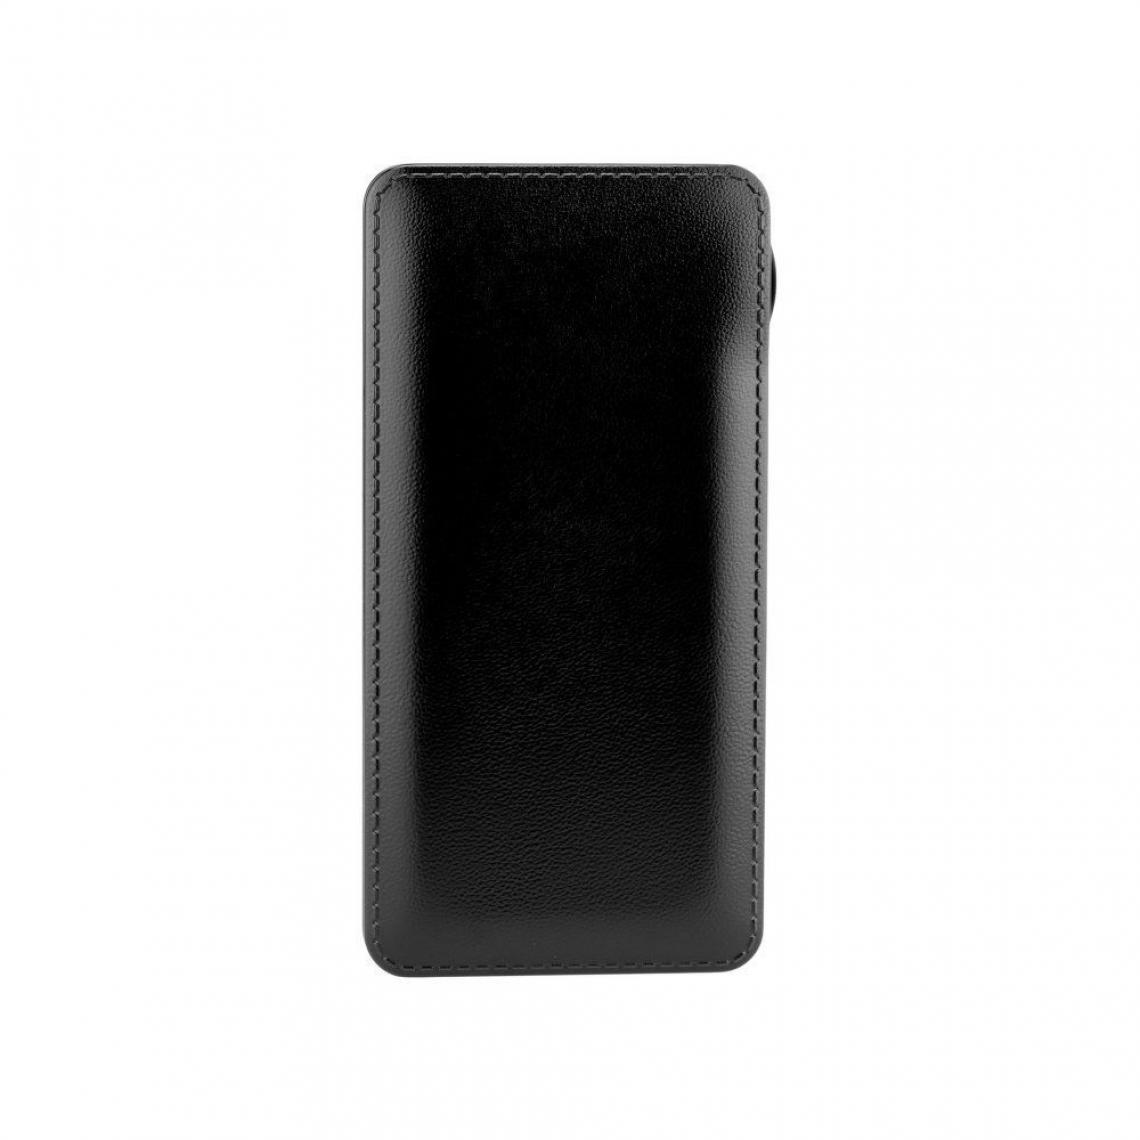 Ozzzo - Chargeur batterie externe 20000 mAh powerbank ozzzo noir pour Samsung Galaxy Tab S3 T820 9.7" - Autres accessoires smartphone